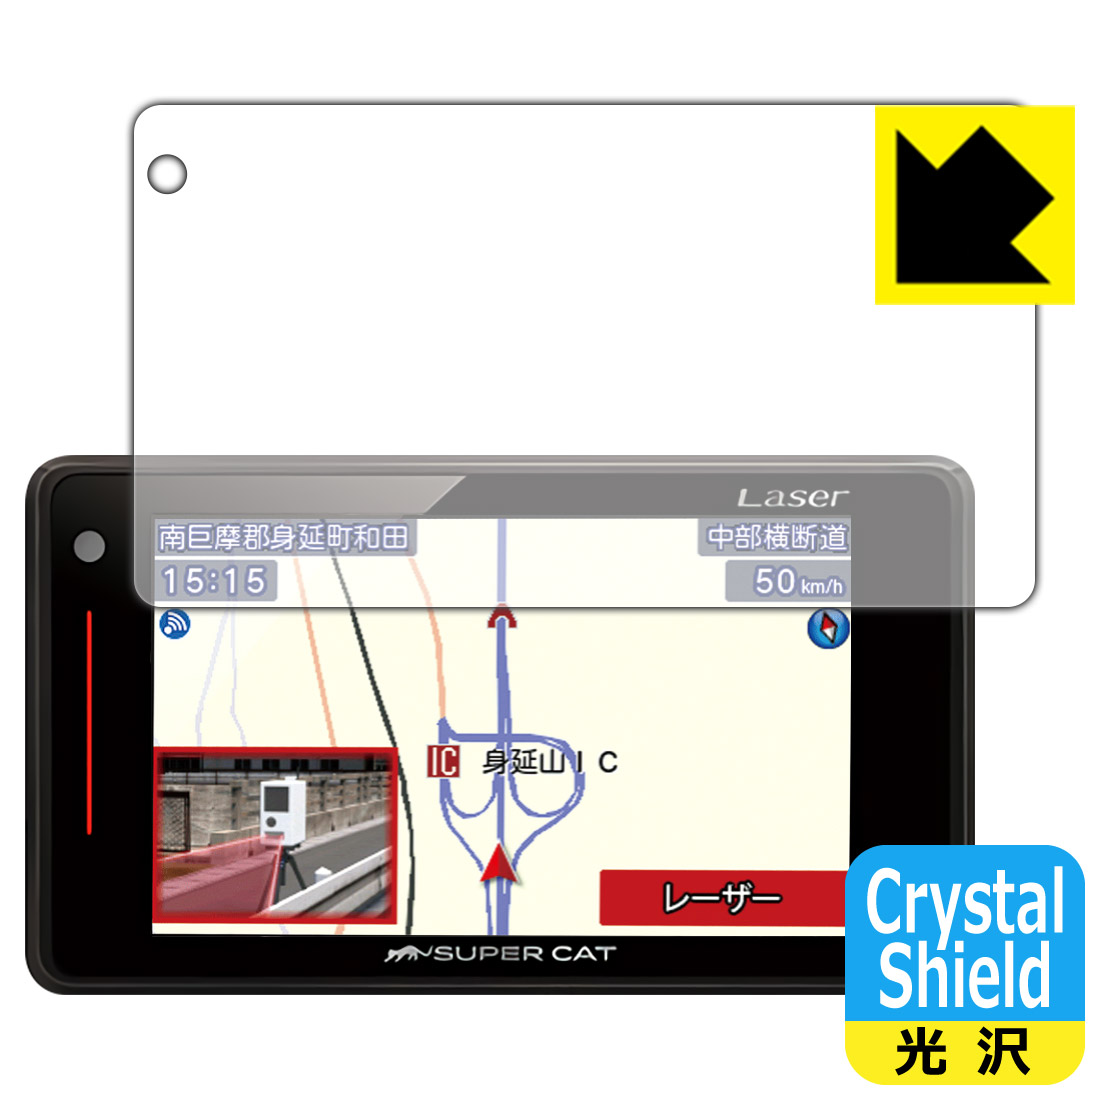 【楽天市場】Crystal Shield レーザー&レーダー探知機 SUPER CAT LS71a/LS330/LS340/LS340L